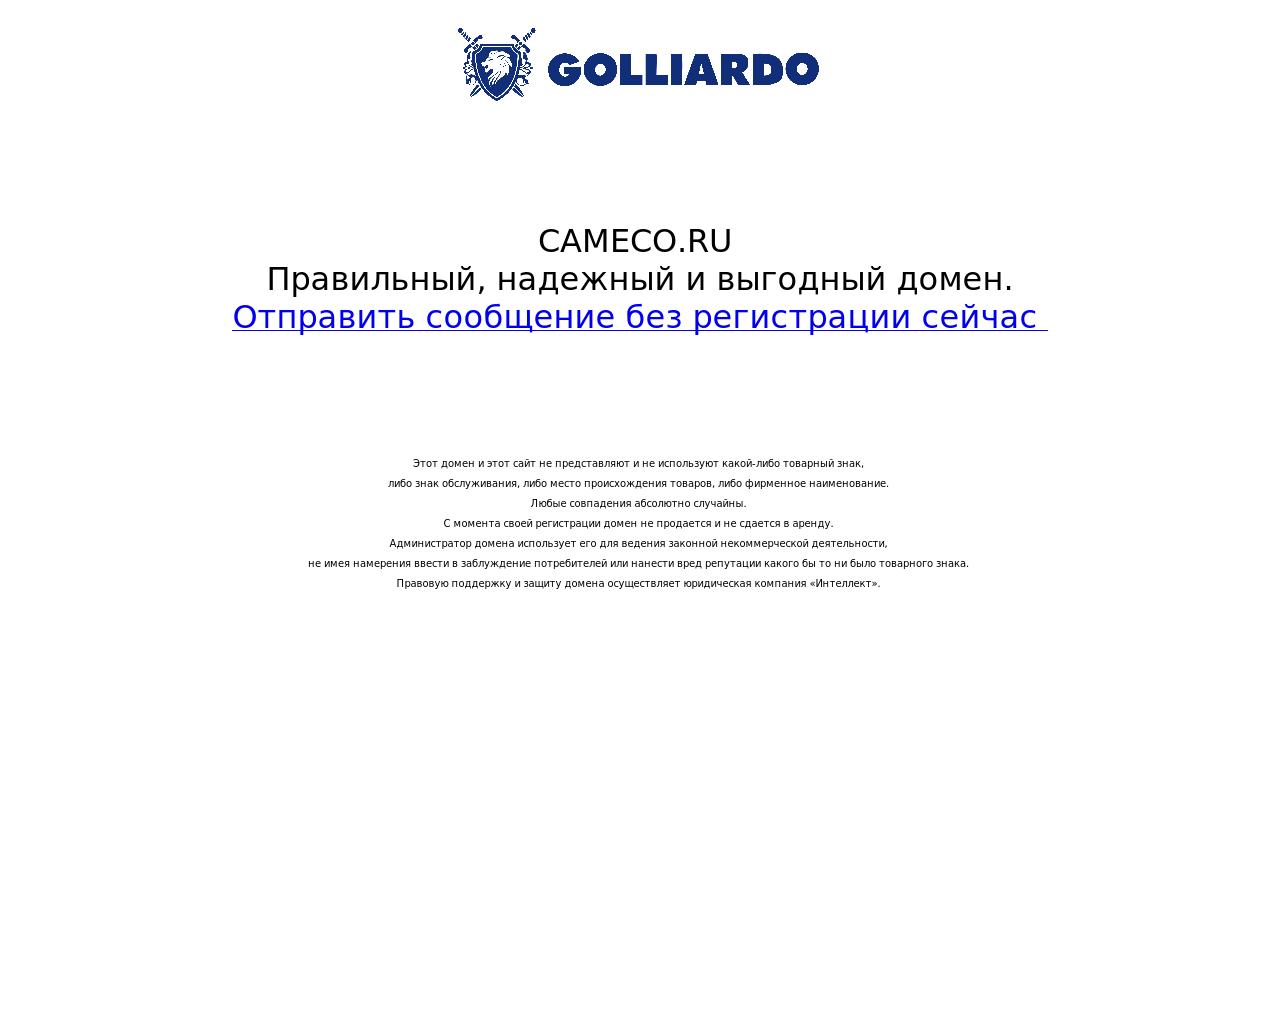 Изображение сайта cameco.ru в разрешении 1280x1024